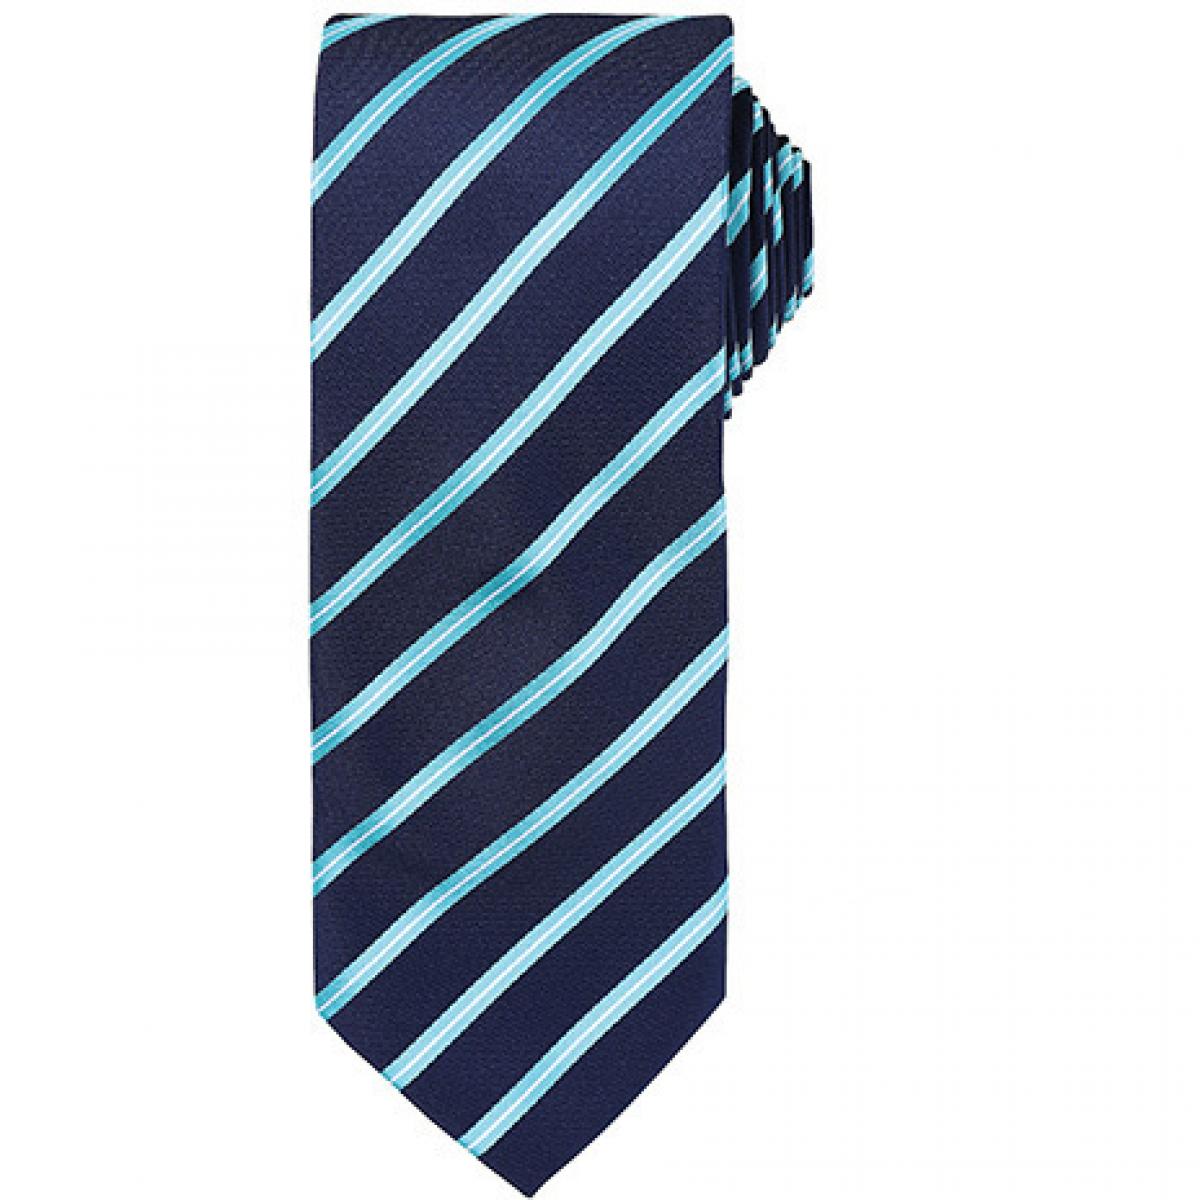 Hersteller: Premier Workwear Herstellernummer: PR784 Artikelbezeichnung: Sports Stripe Tie / Breite 3" / 7,5 cm / Länge 57" / 144 cm Farbe: Navy/Turquoise